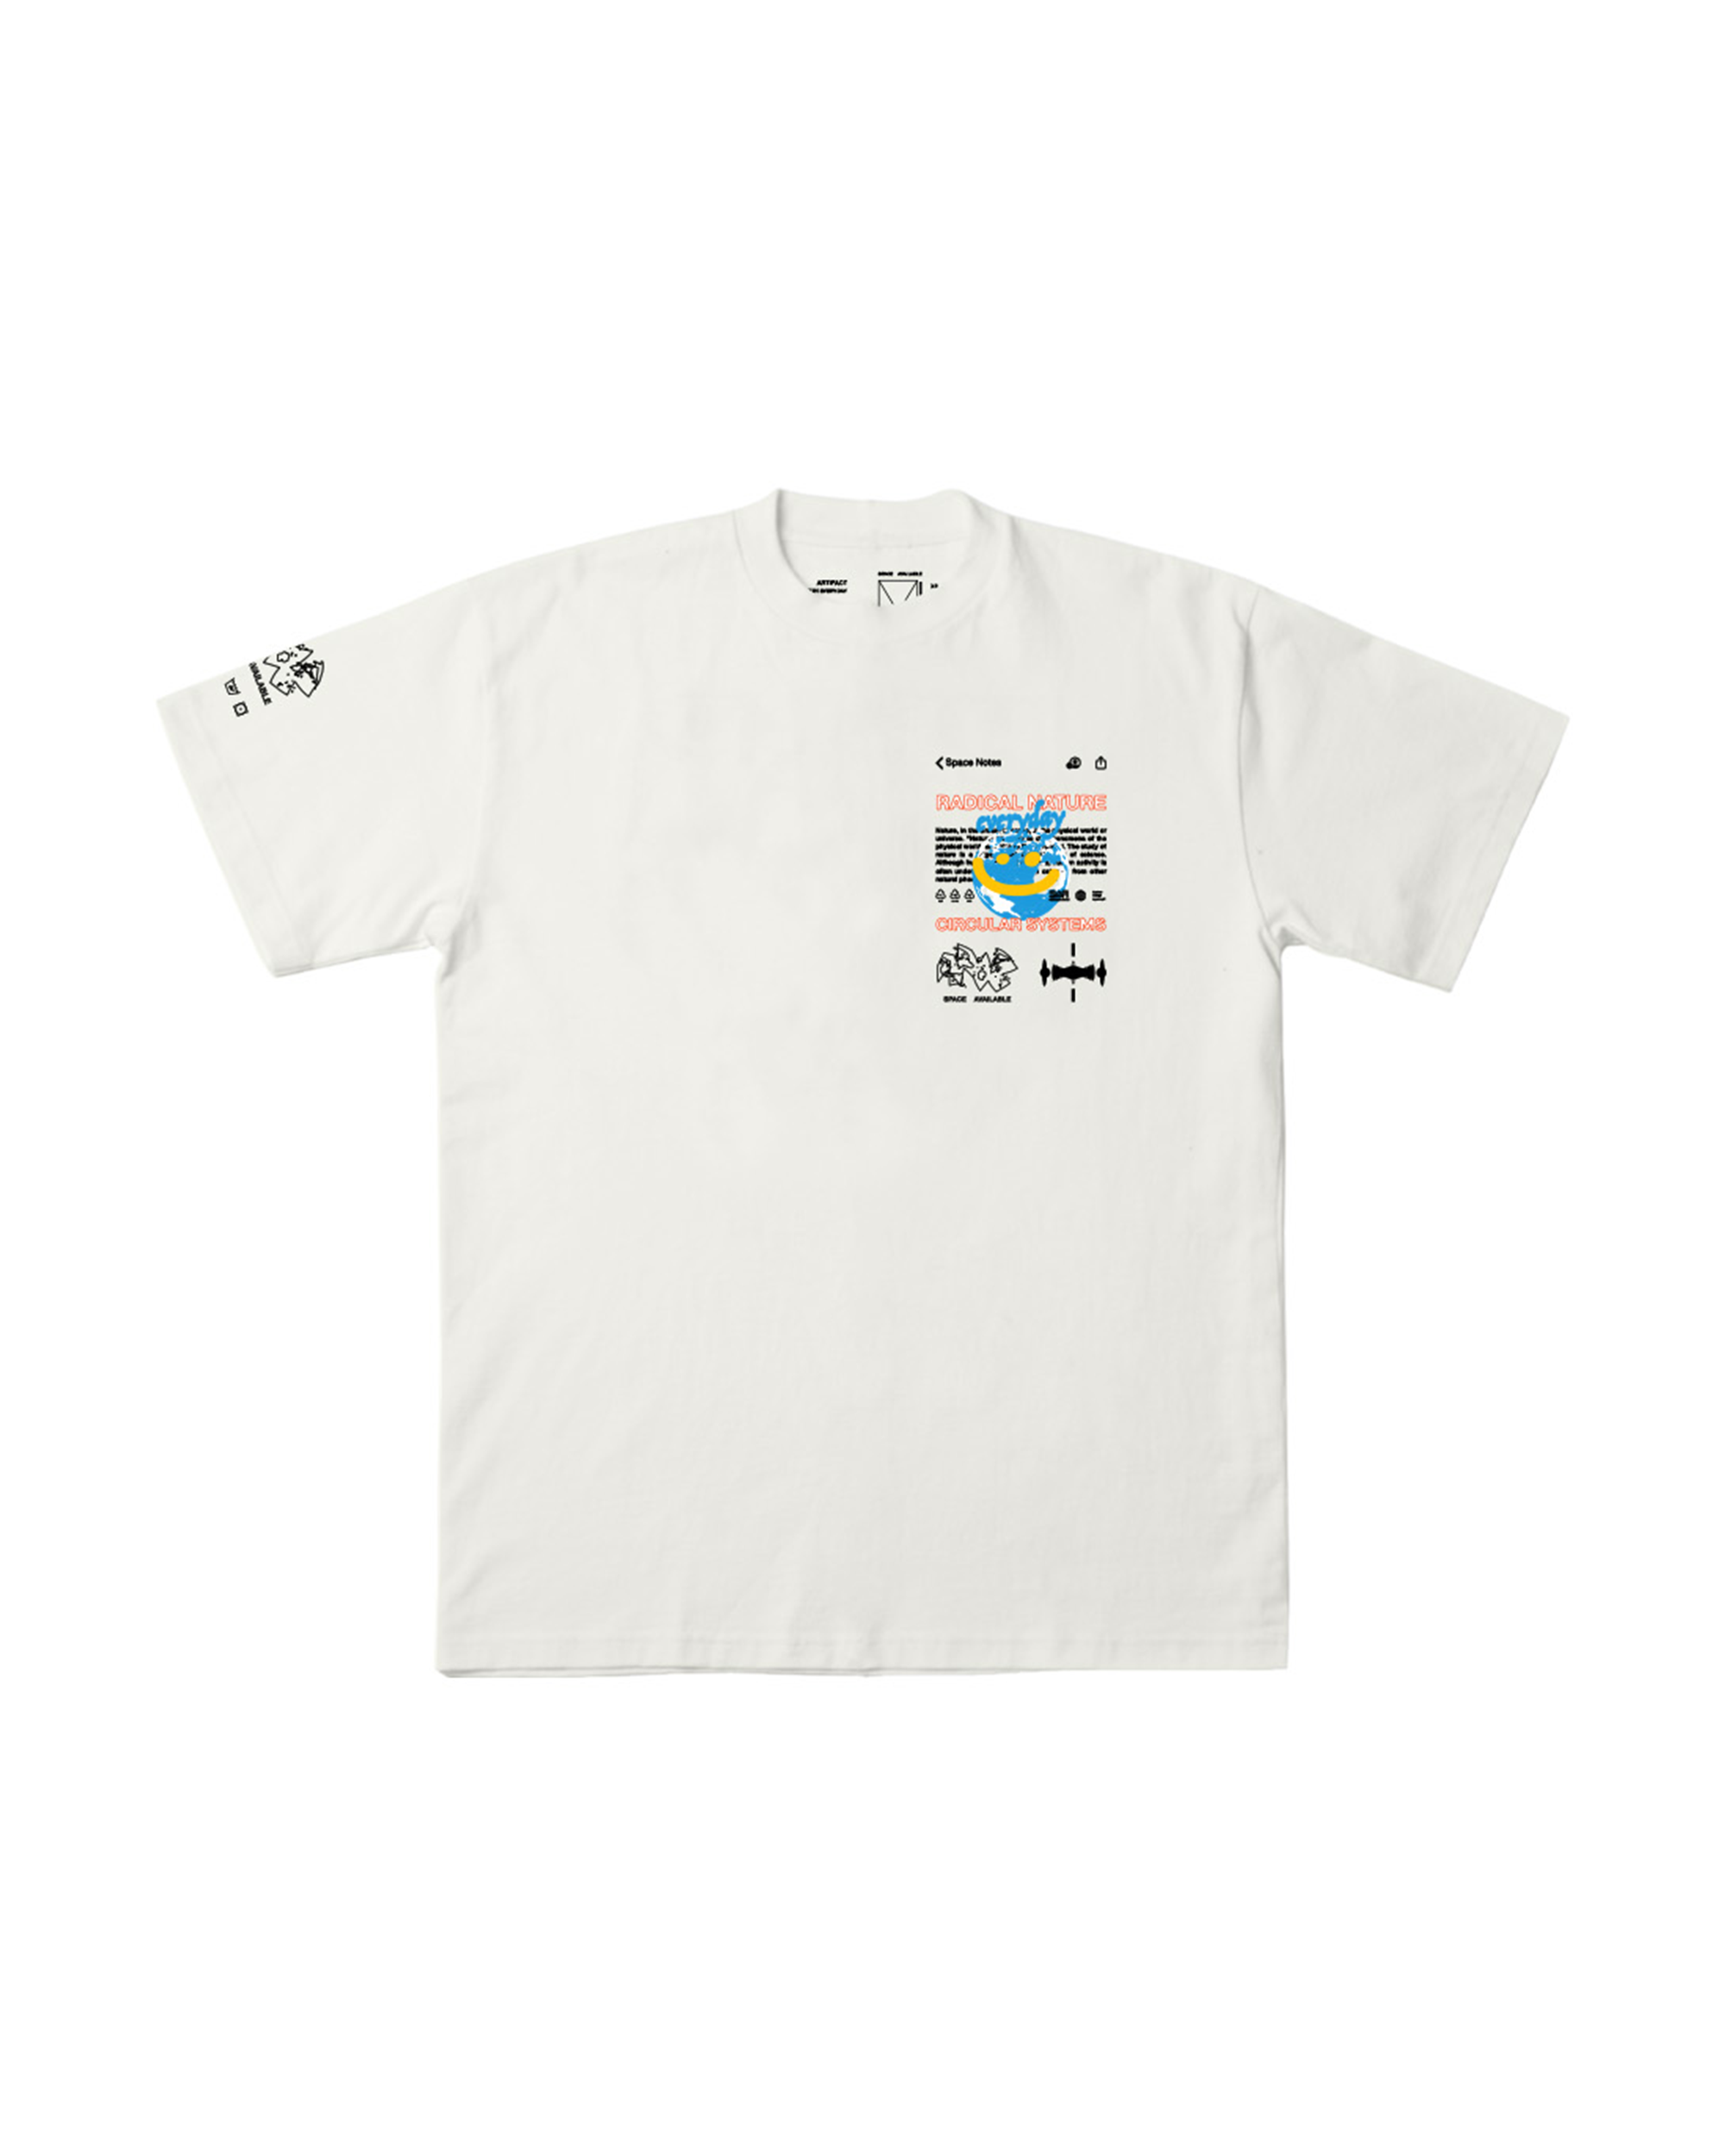 Radical Nature T-Shirt - White